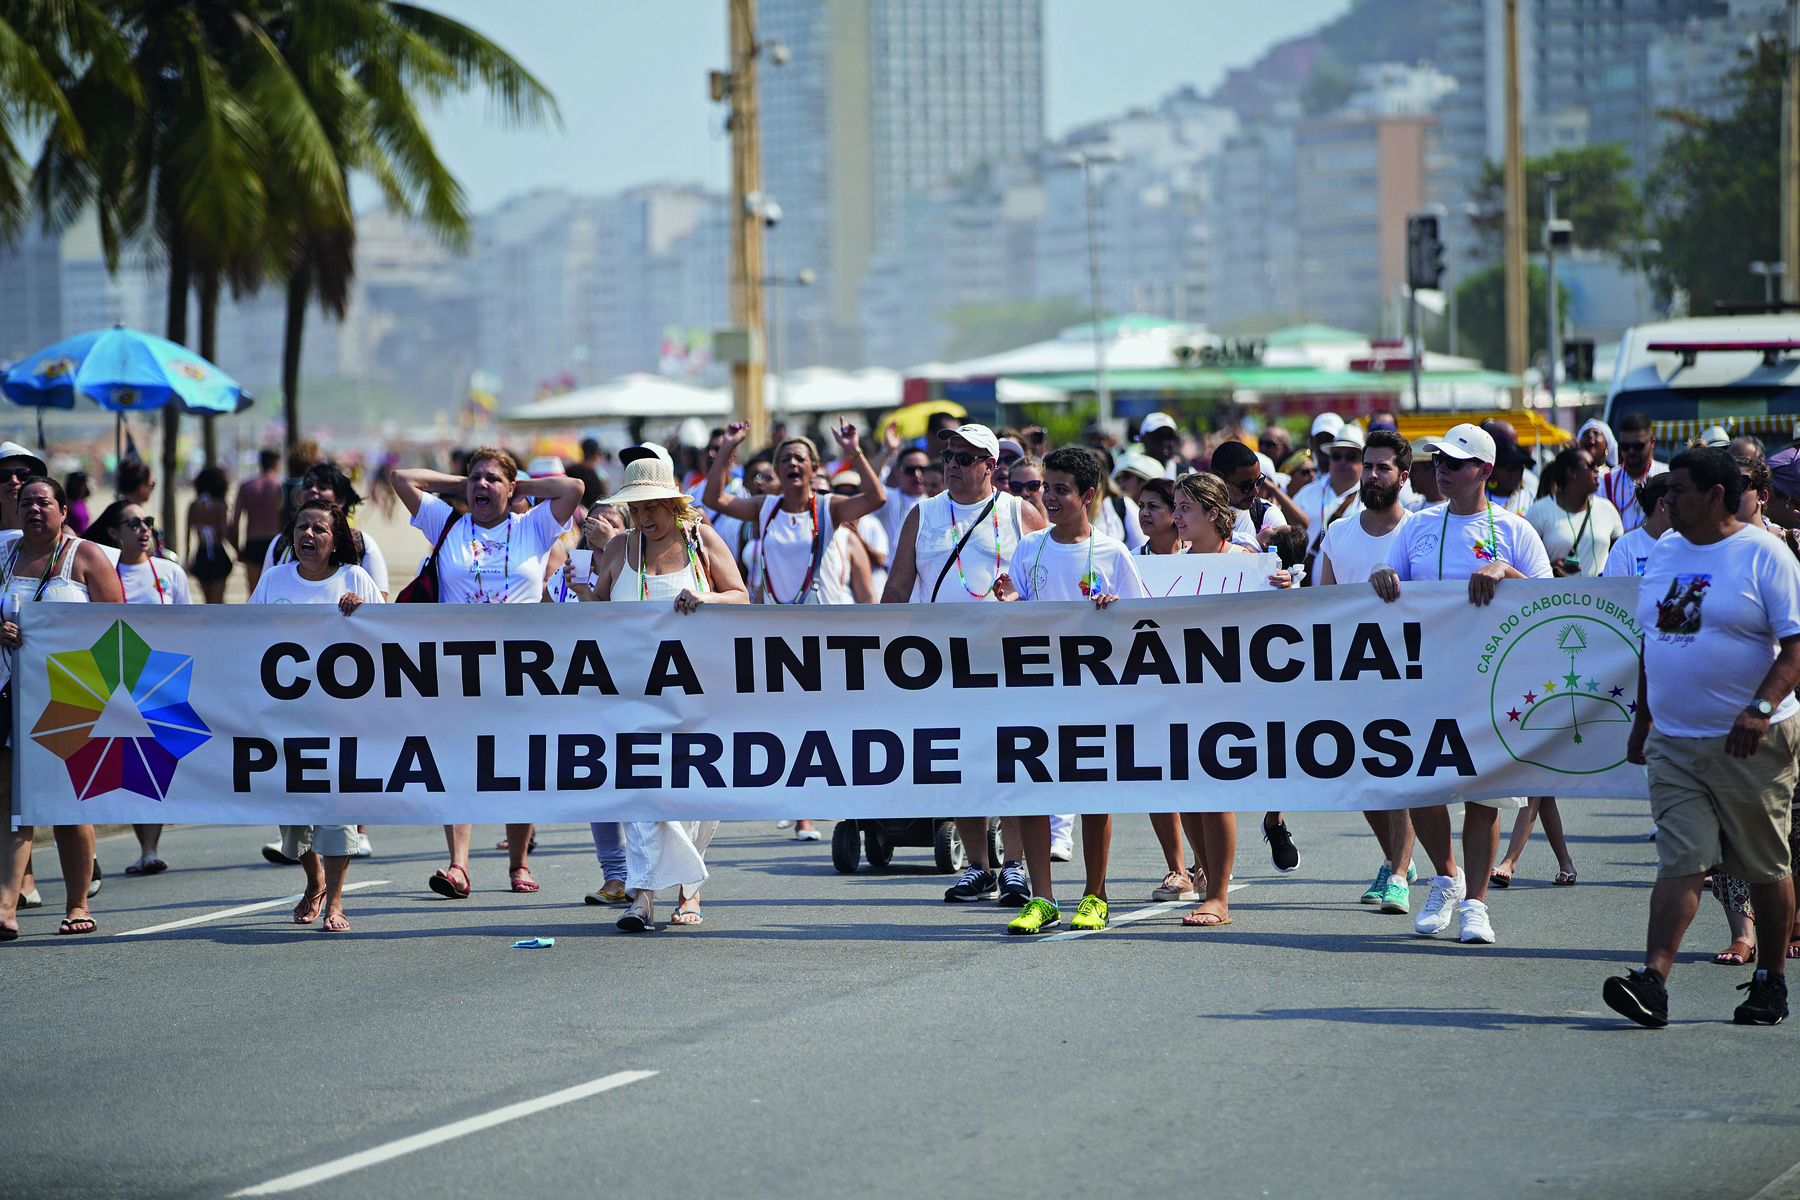 Fotografia. Uma multidão de pessoas sobre uma via pavimentada, todos vestindo camisetas brancas, segurando uma larga faixa com o texto: 'Contra a intolerância! Pela liberdade religiosa'.